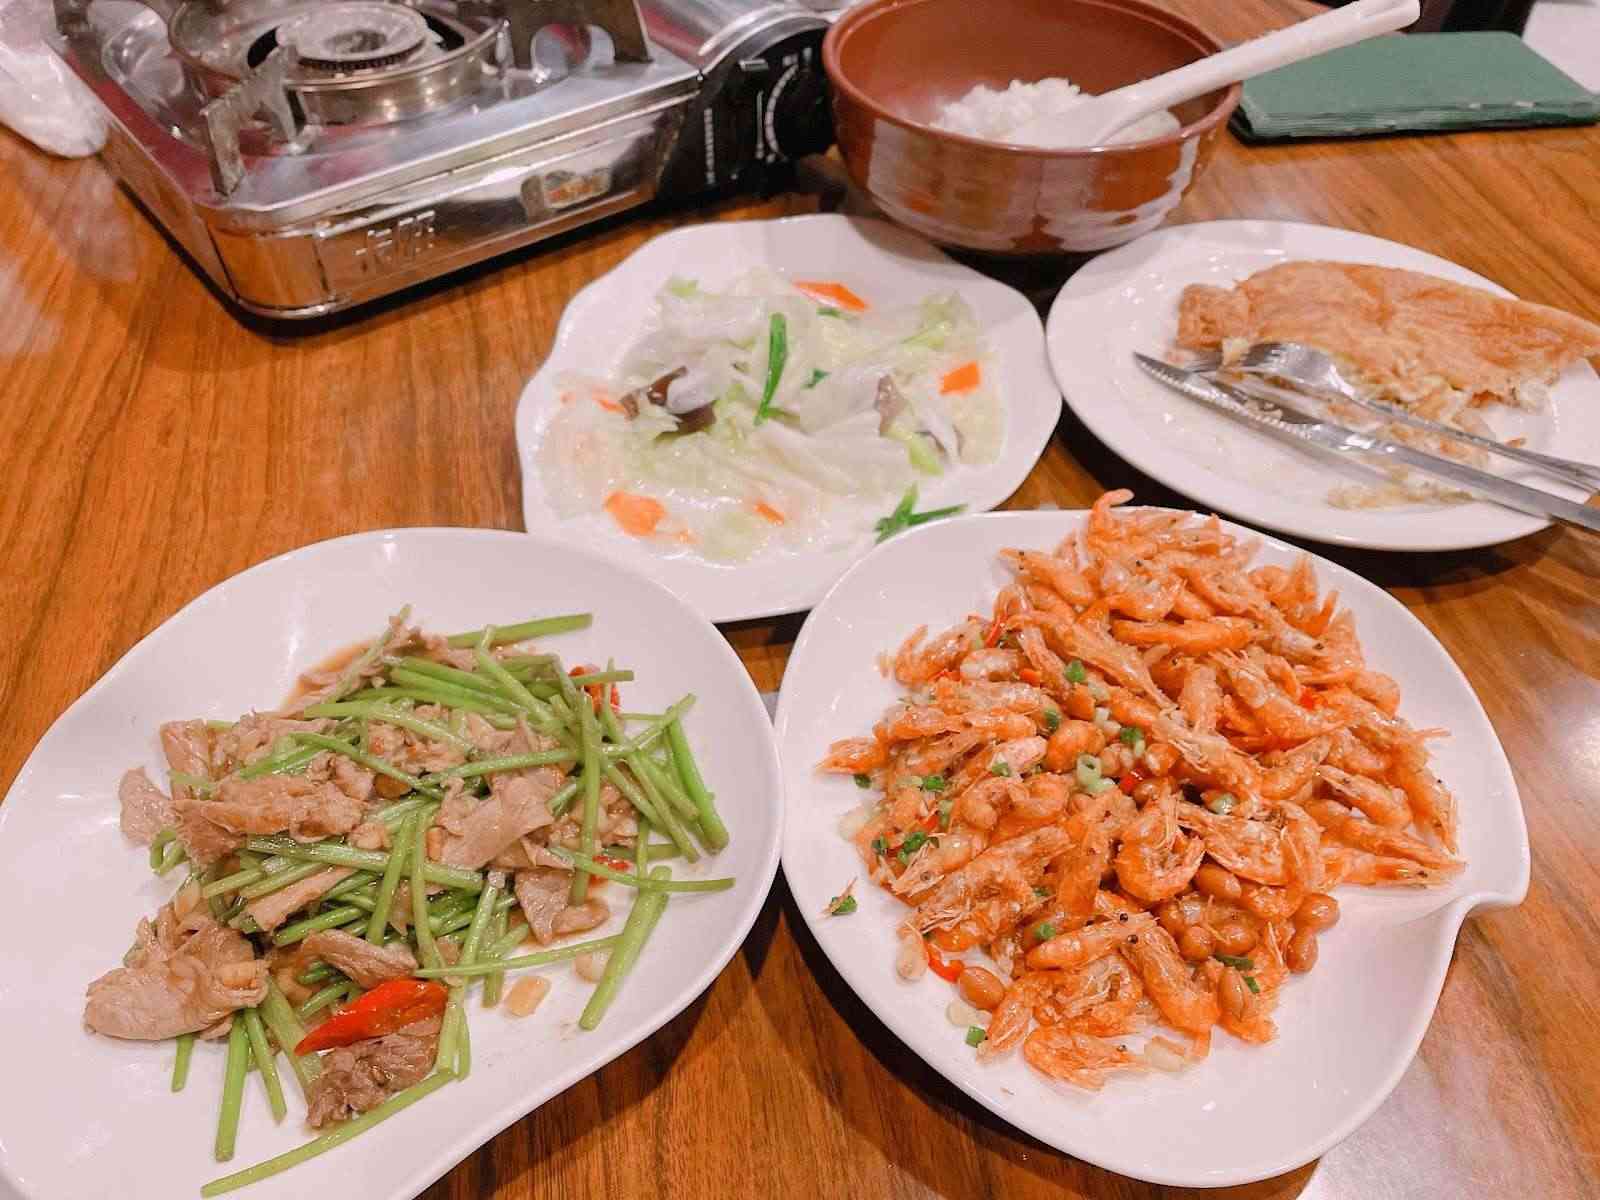 青山食堂/ 攝影者: Sumi Chou

(由第三方資訊提供)